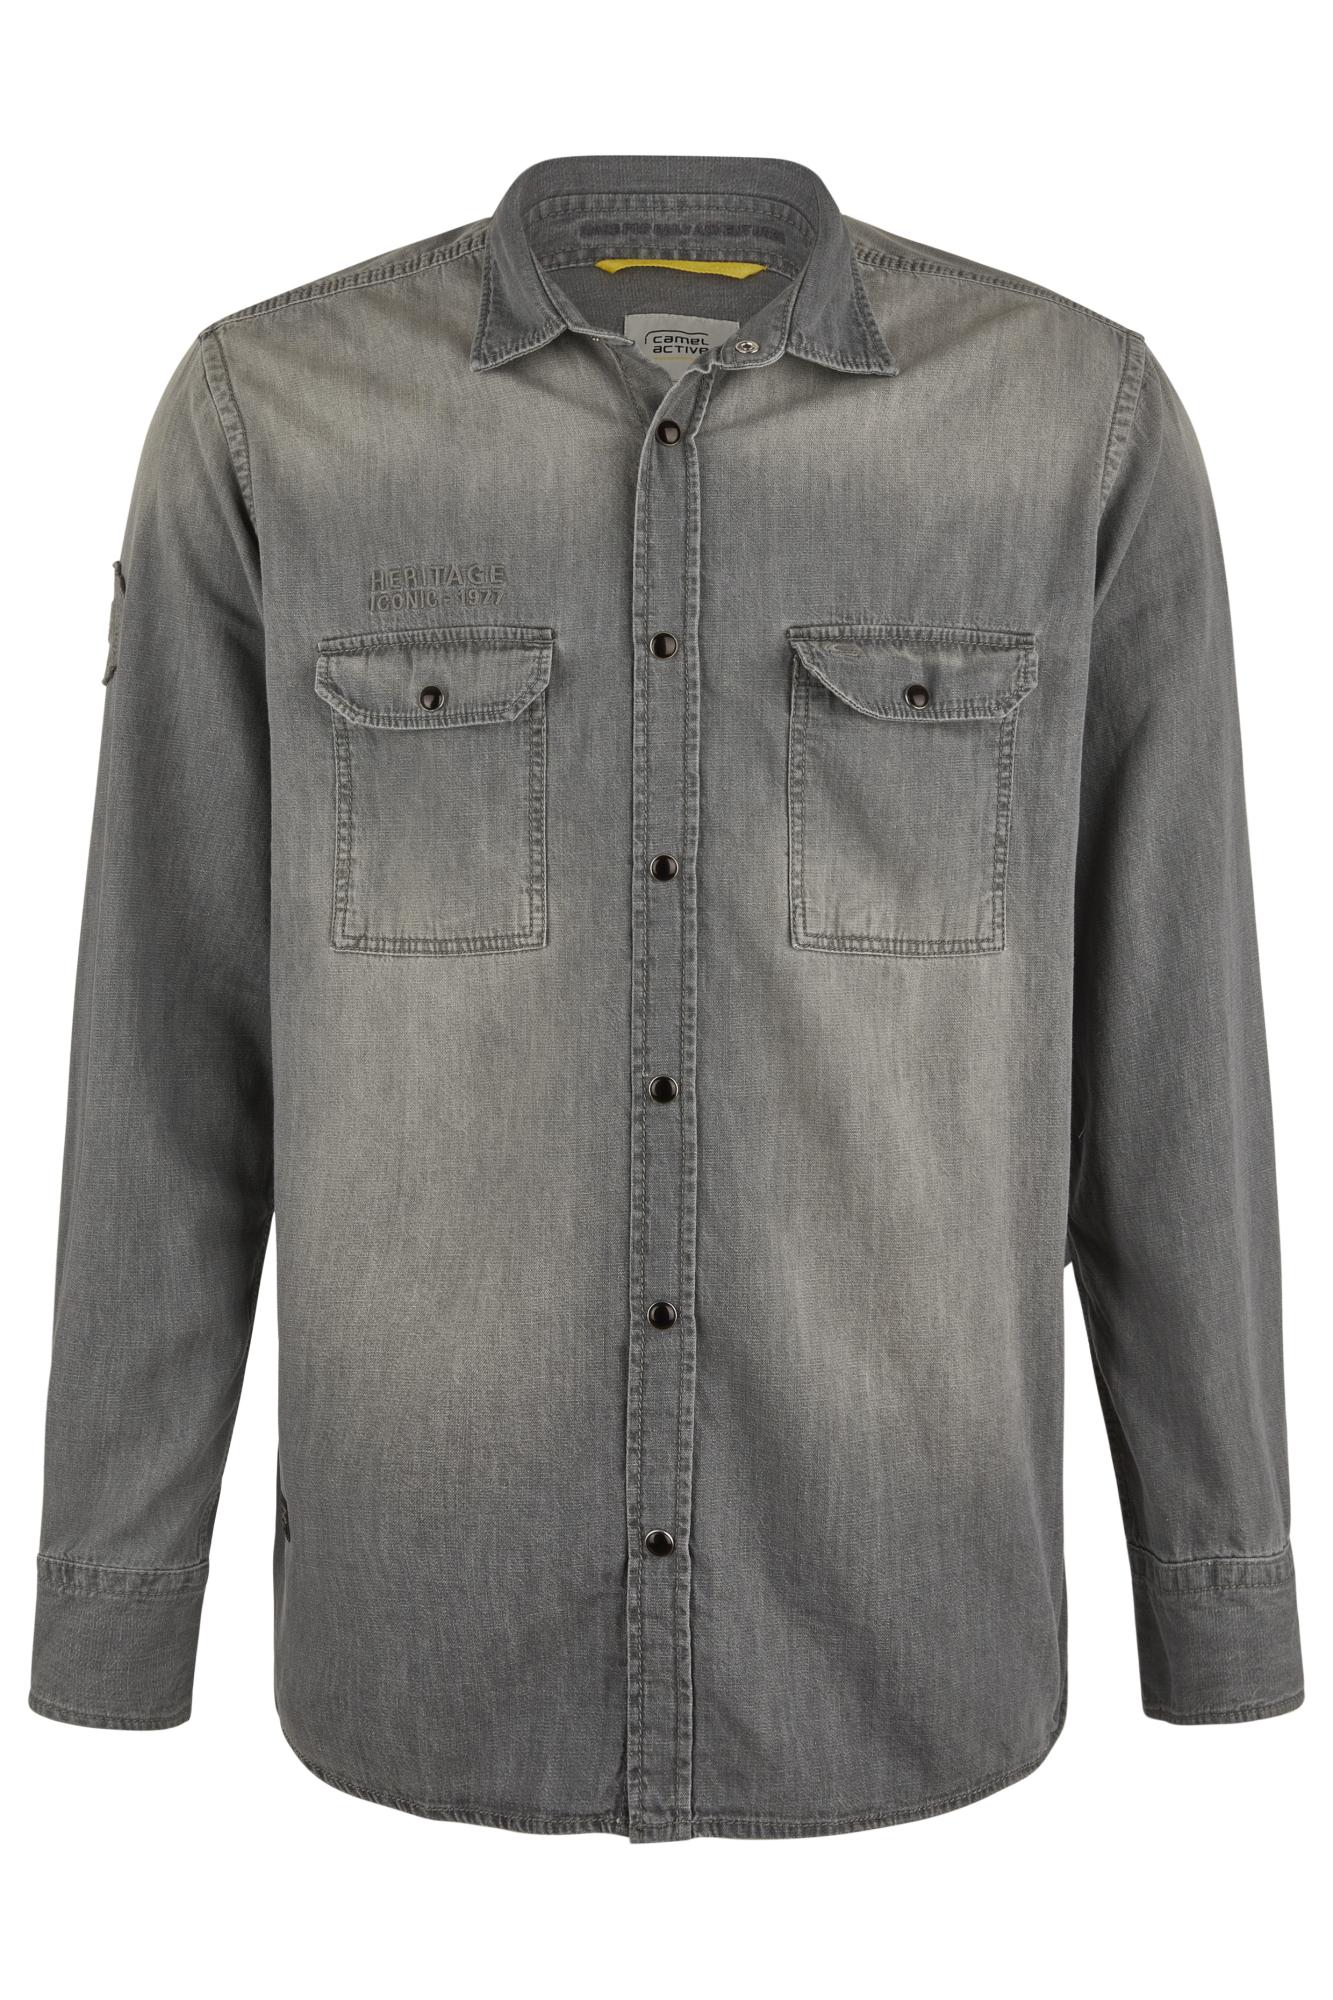 Мужская рубашка Camel Active, серое, цвет серый, размер 44